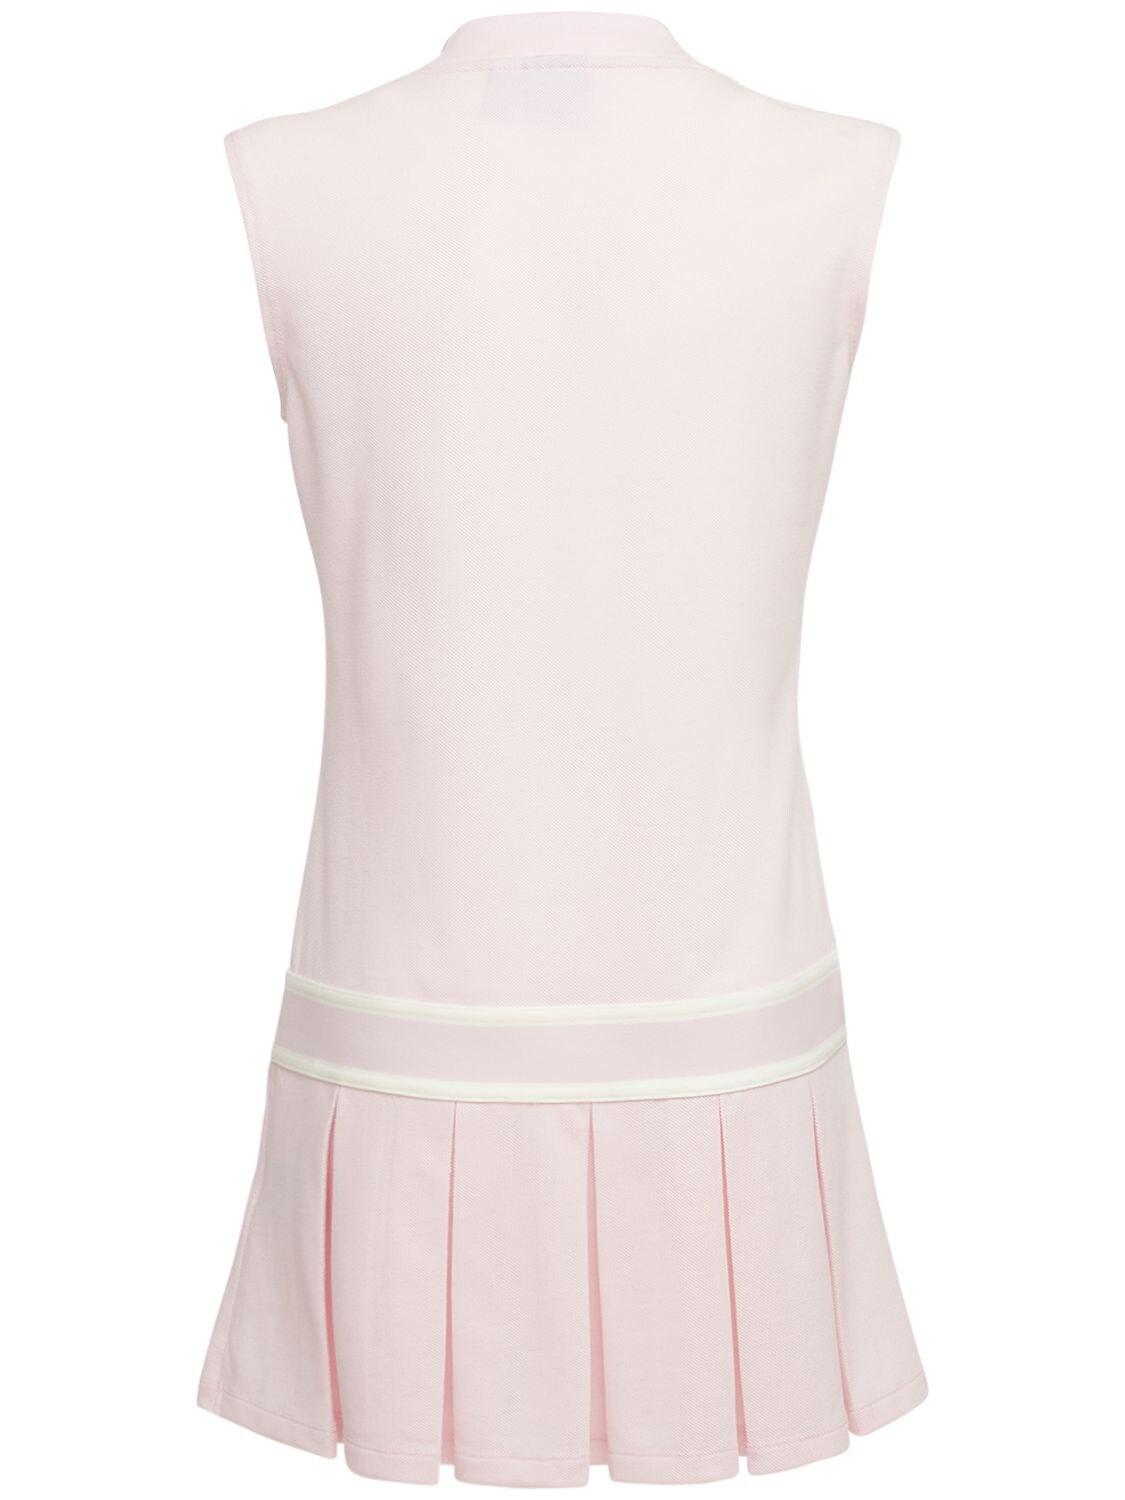 adidas Originals Tennis Dress in Pink | Lyst